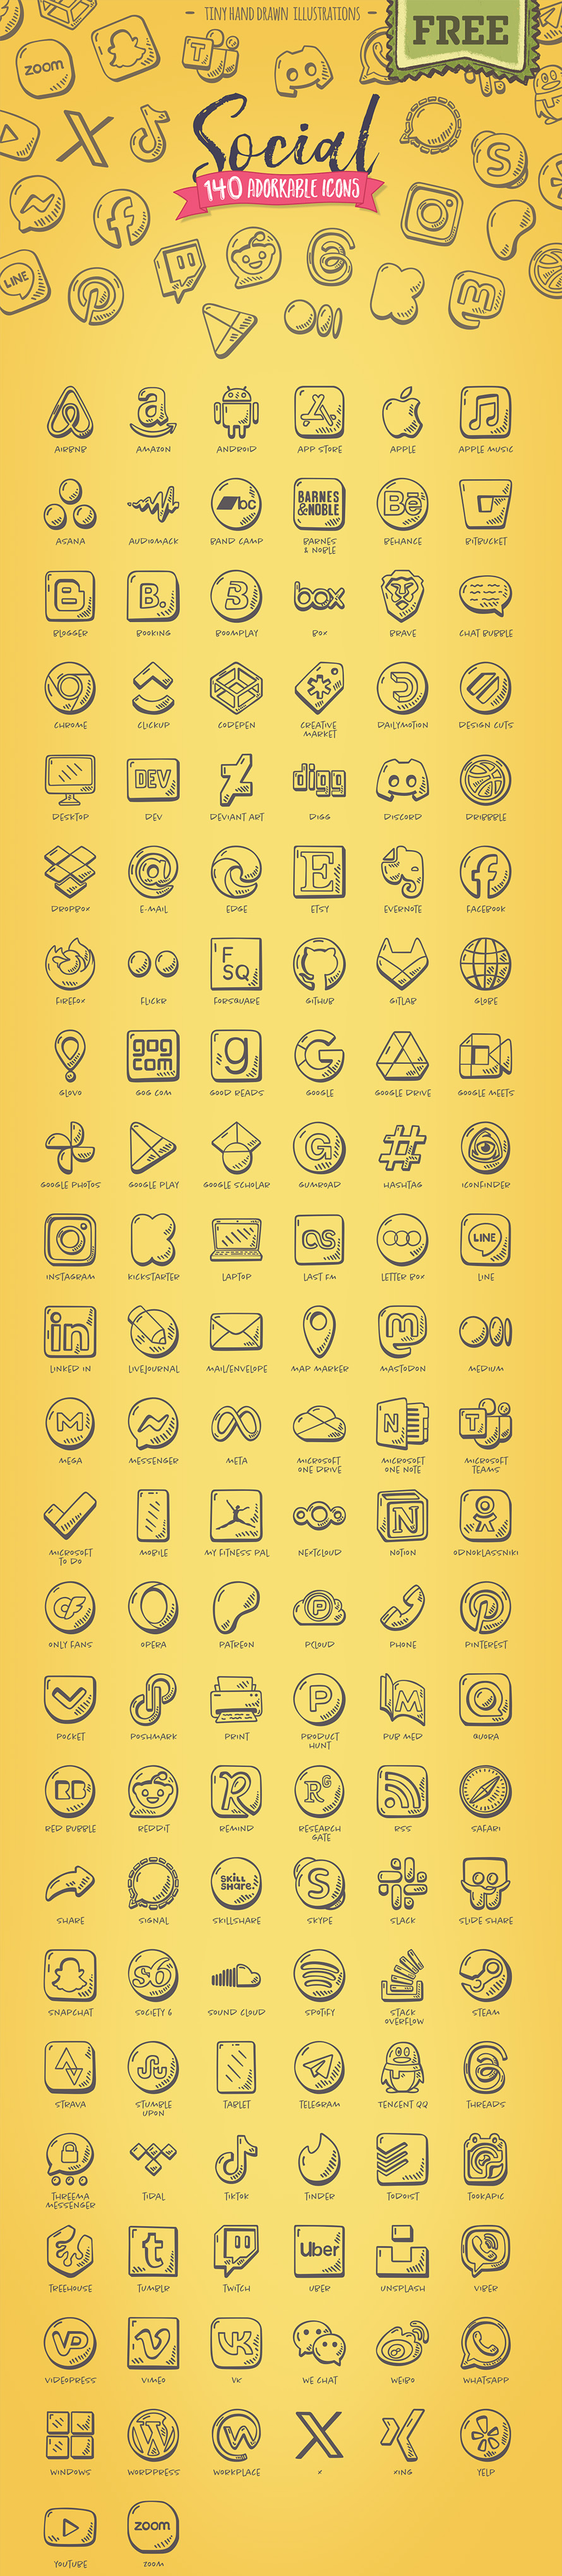 Free Hand-drawn Social Media Icons (140 Icons)